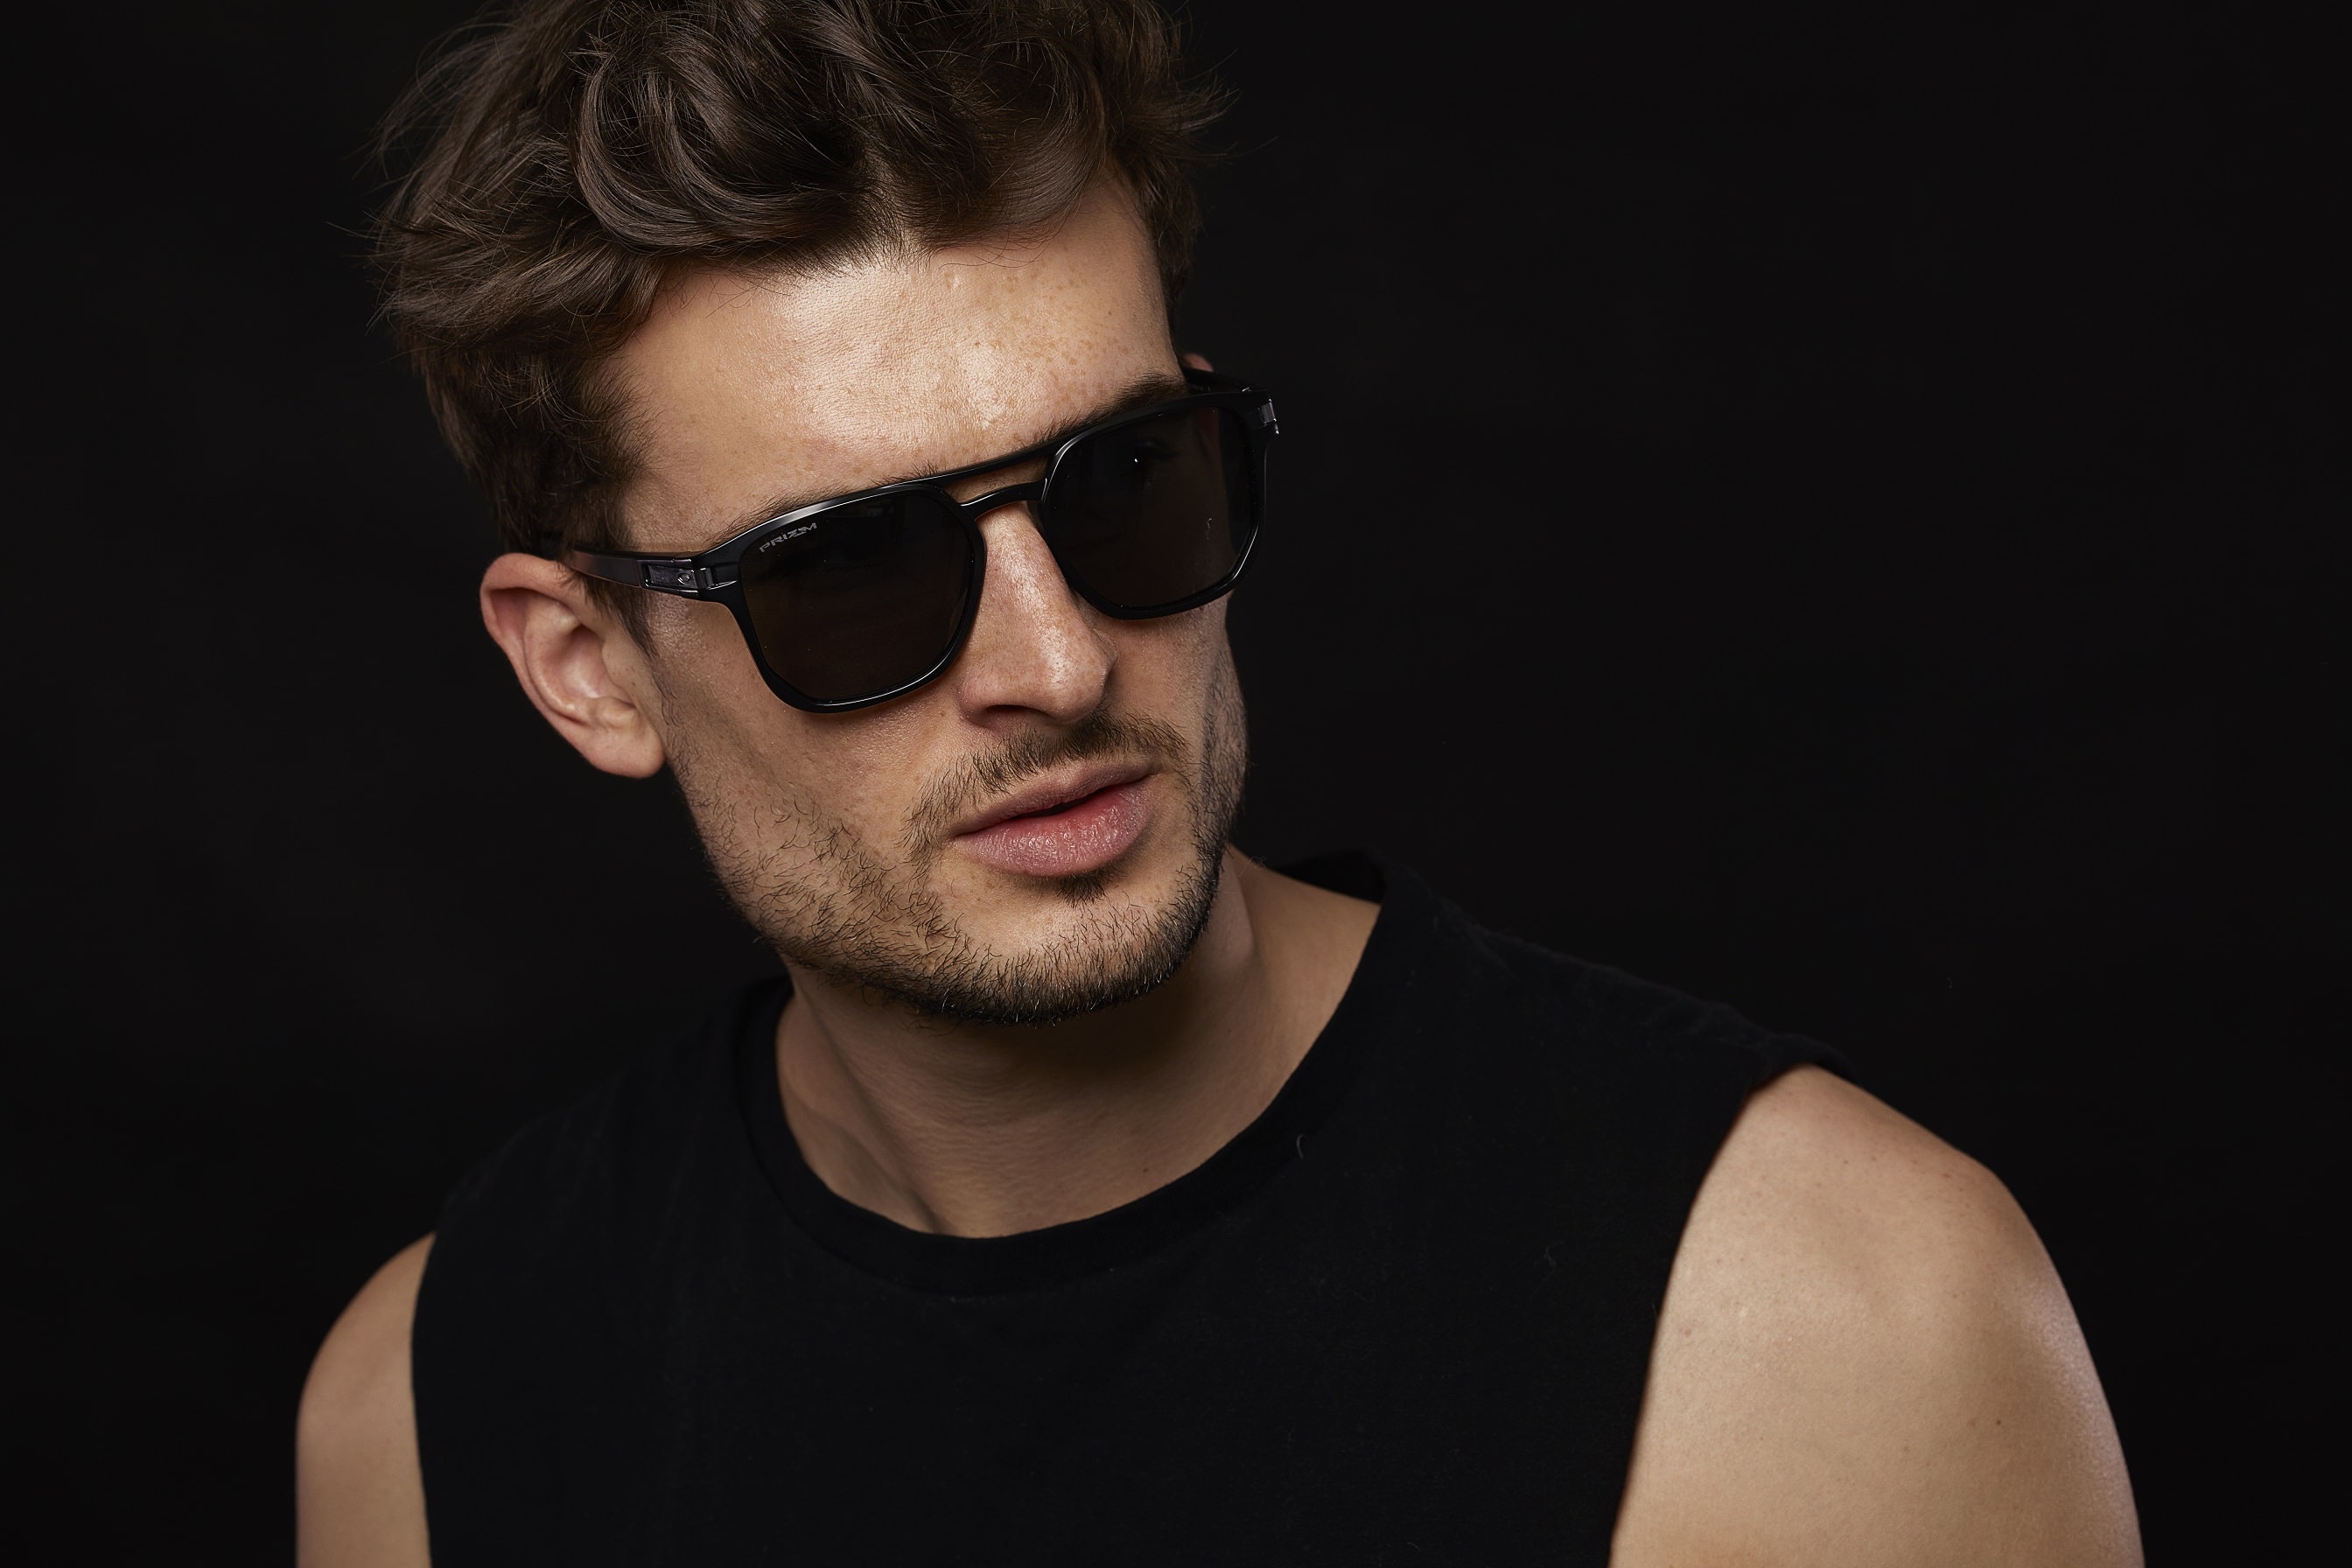 oakley sunglasses for men 2019